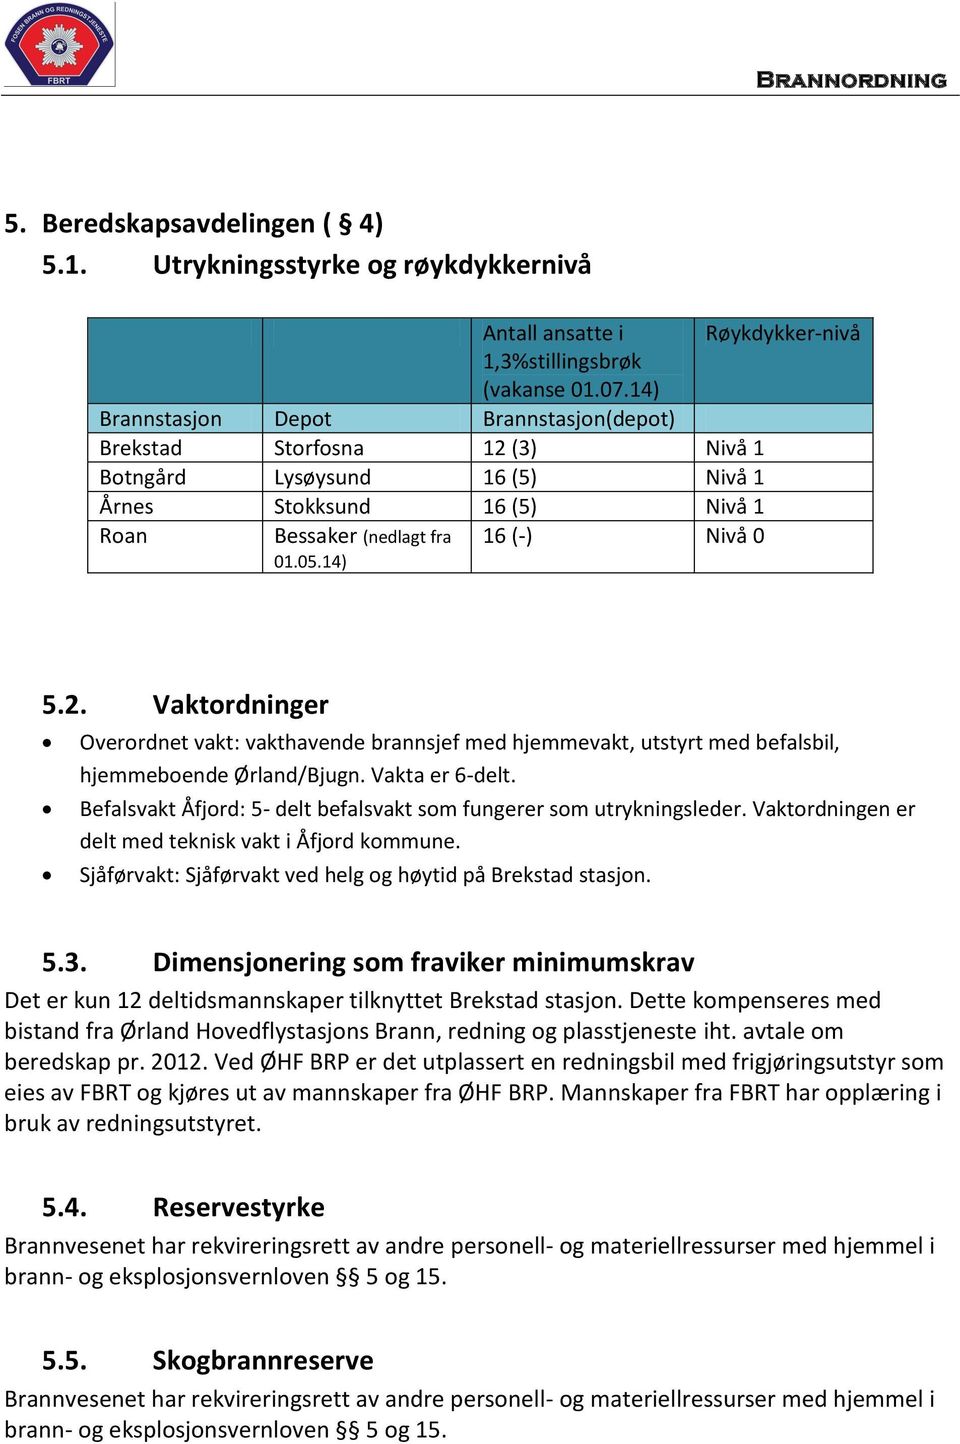 Vakta er 6-delt. Befalsvakt Åfjord: 5- delt befalsvakt som fungerer som utrykningsleder. Vaktordningen er delt med teknisk vakt i Åfjord kommune.